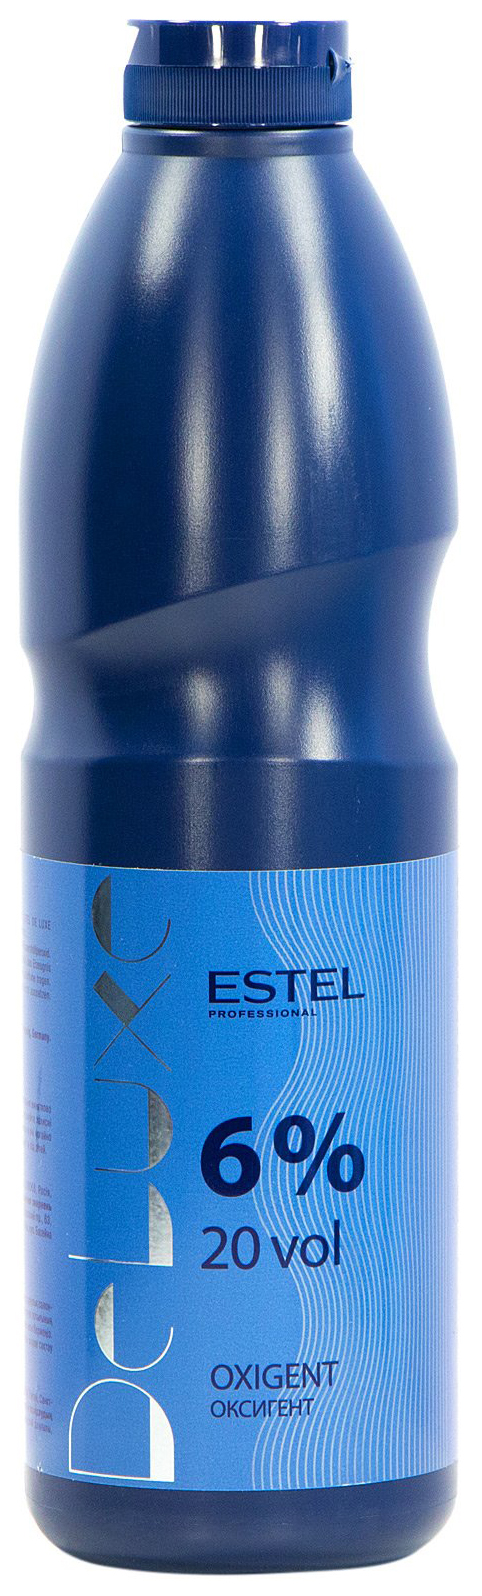 Проявитель Estel Professional De Luxe Oxigent 6% 900 мл estel professional бальзам оттеночный для волос обновление а для медных оттенков curex color intense 250 мл